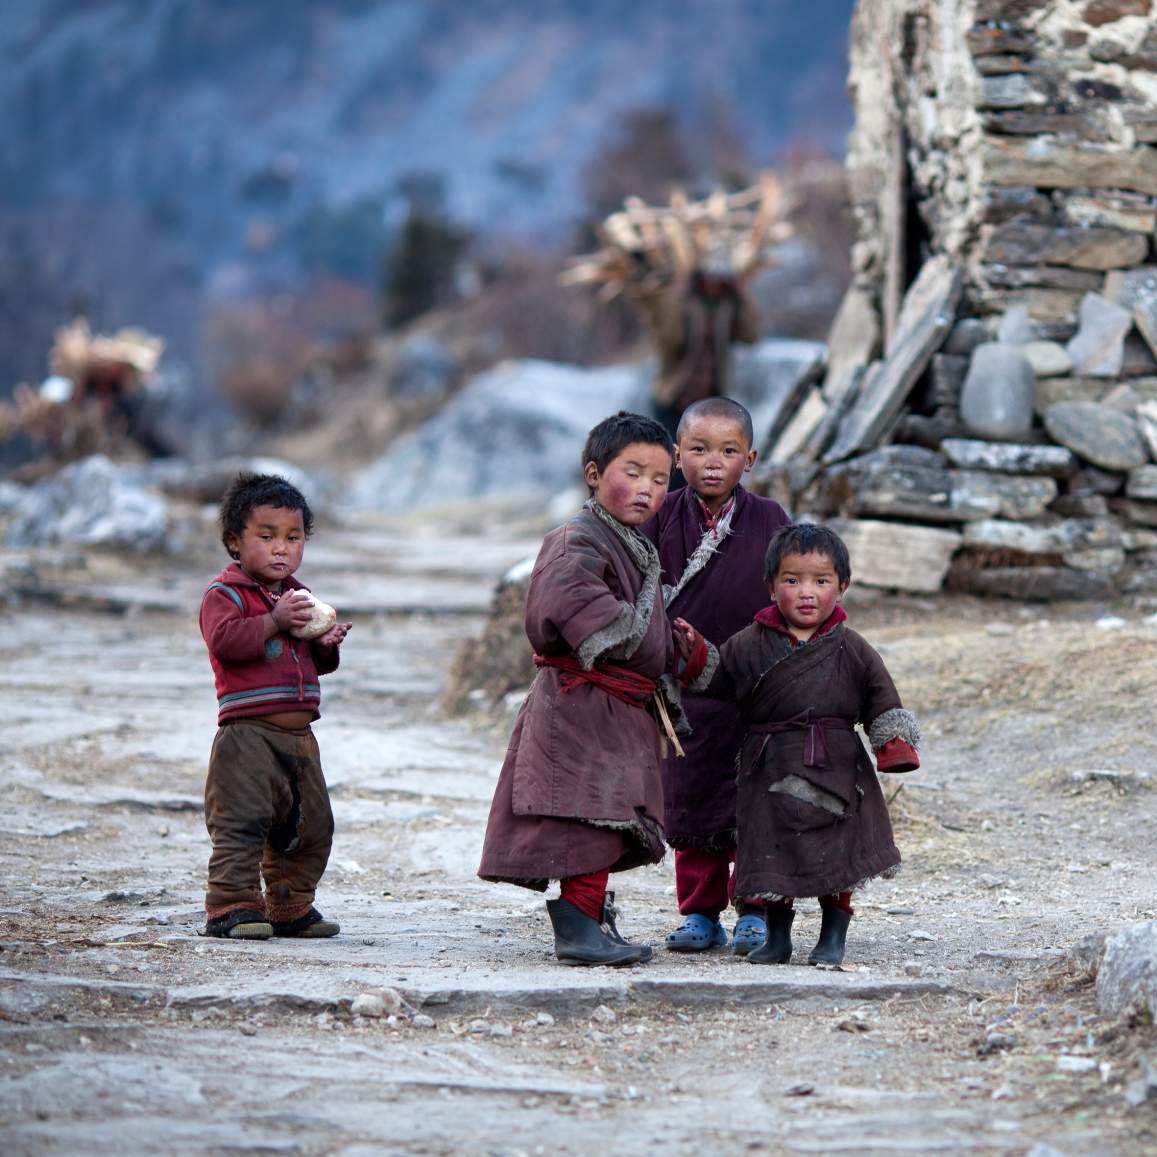 Katër fëmijë tibetianë pozojnë për një foto teksa luajnë në një fshat tibetian.